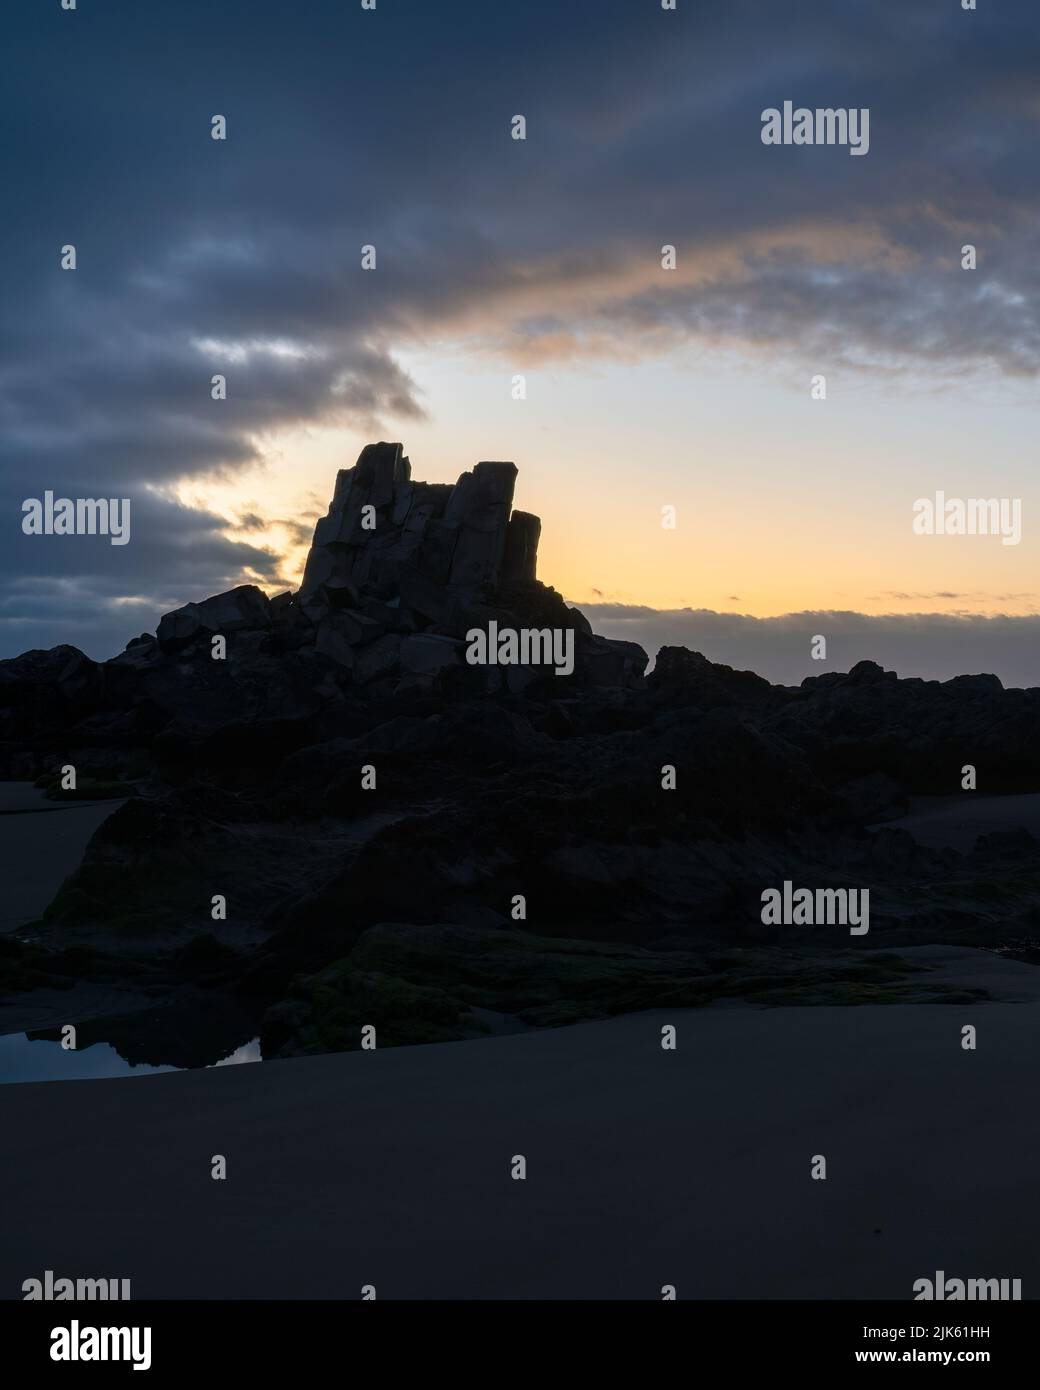 Immagine della silhouette di Shag Rock, conosciuta anche come Rapanui, Christchurch. Formato verticale. Foto Stock